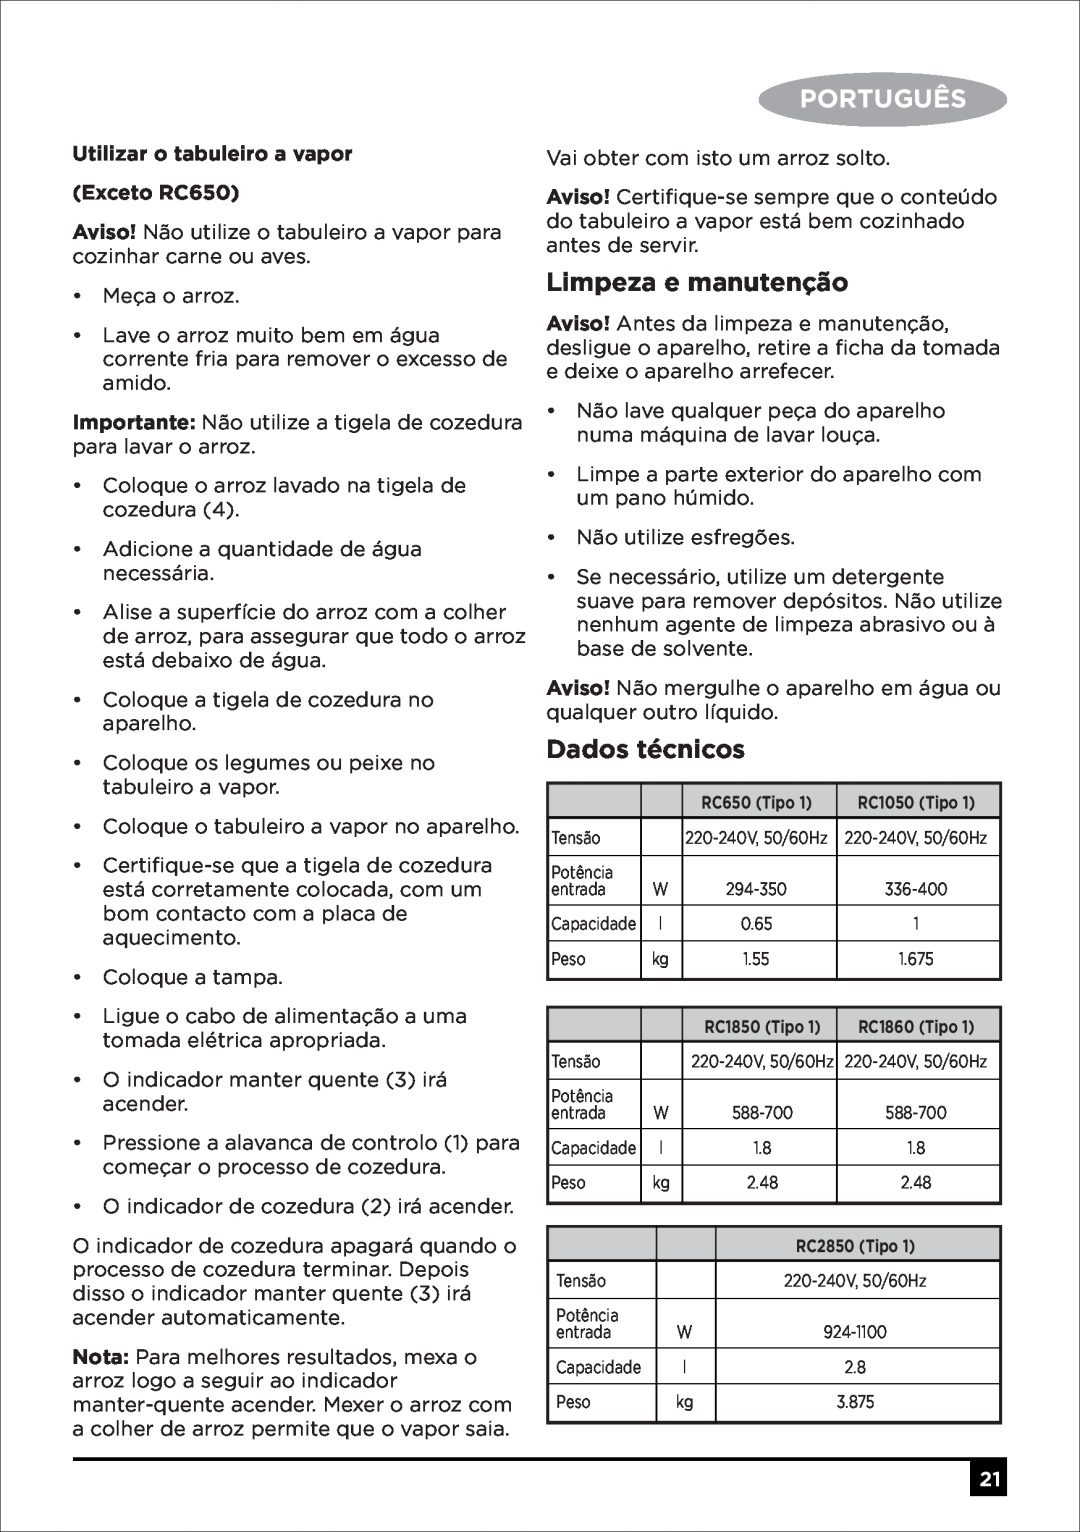 Black & Decker RC650 RC1050 RC1850 RC1860 RC2850 manual Limpeza e manutenção, Dados técnicos, Português 